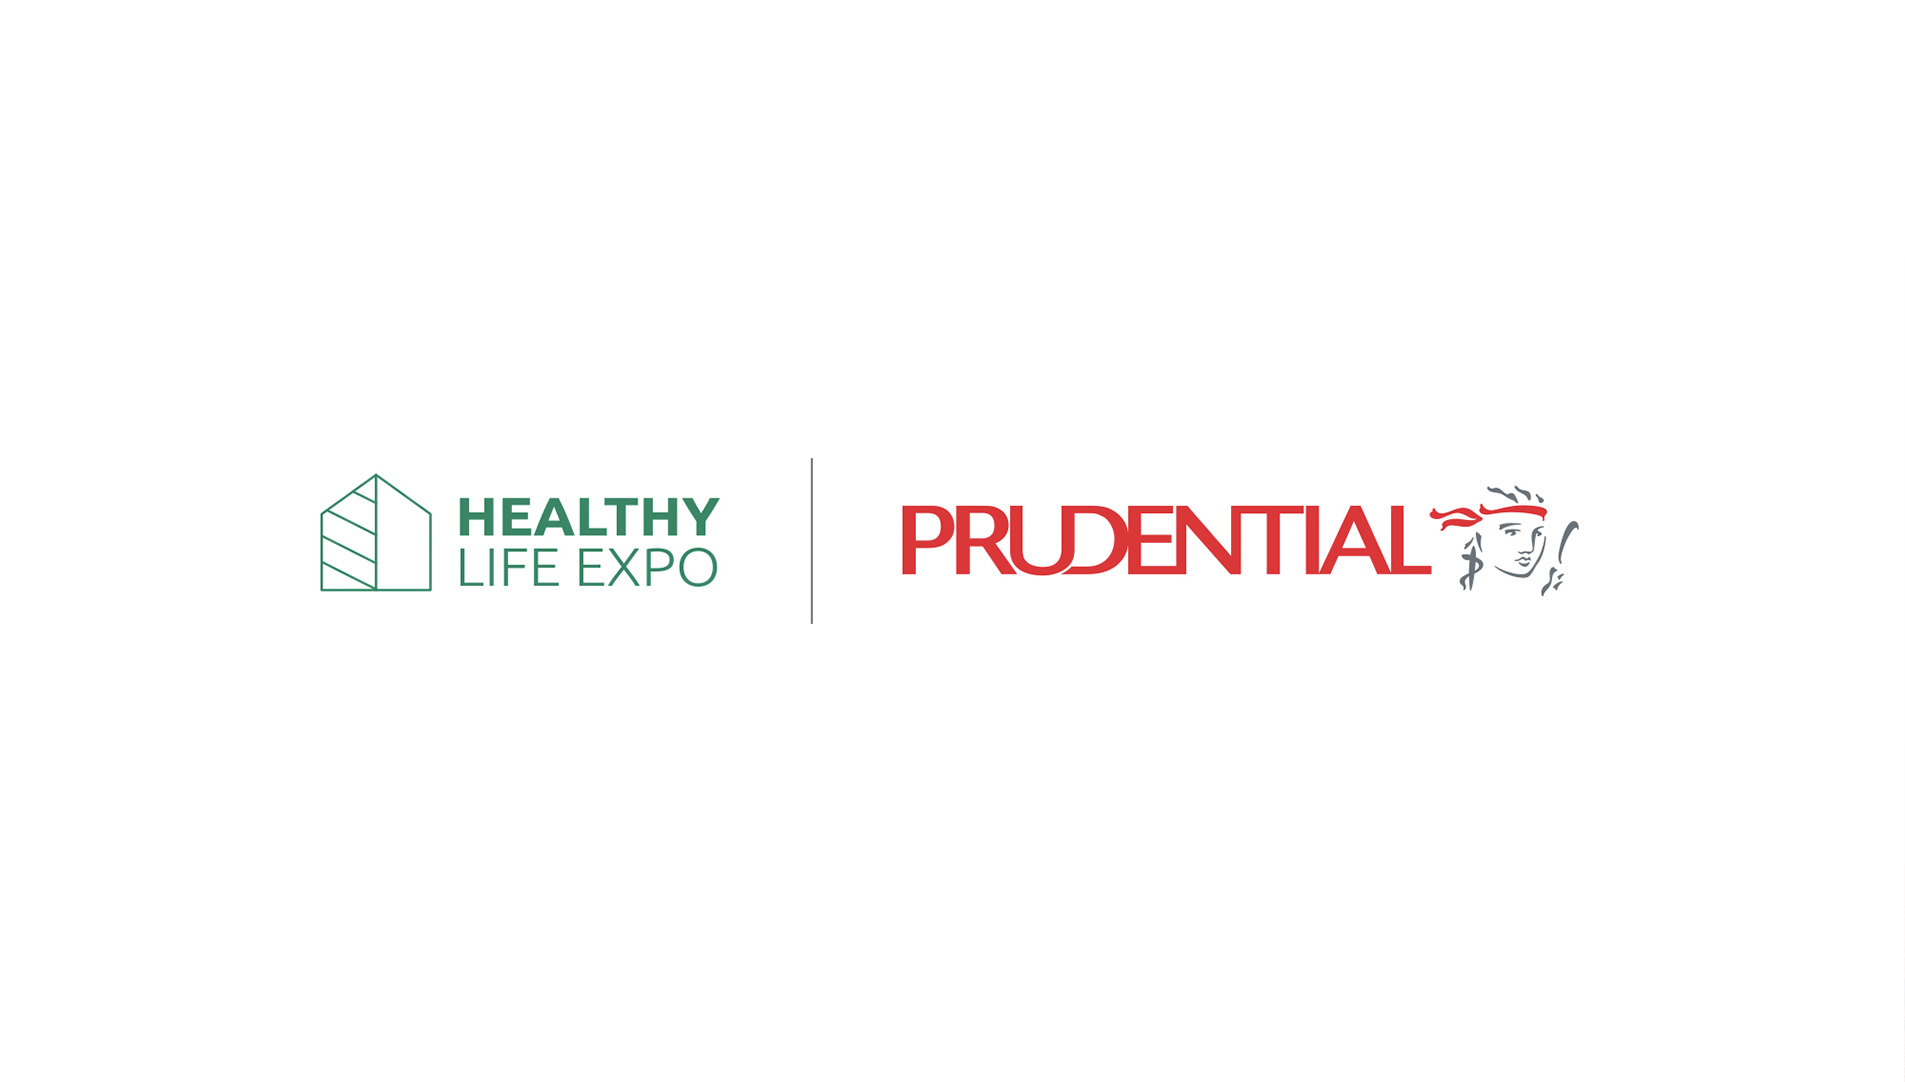 branding agency bali prudential slideshow 04 - Prudential